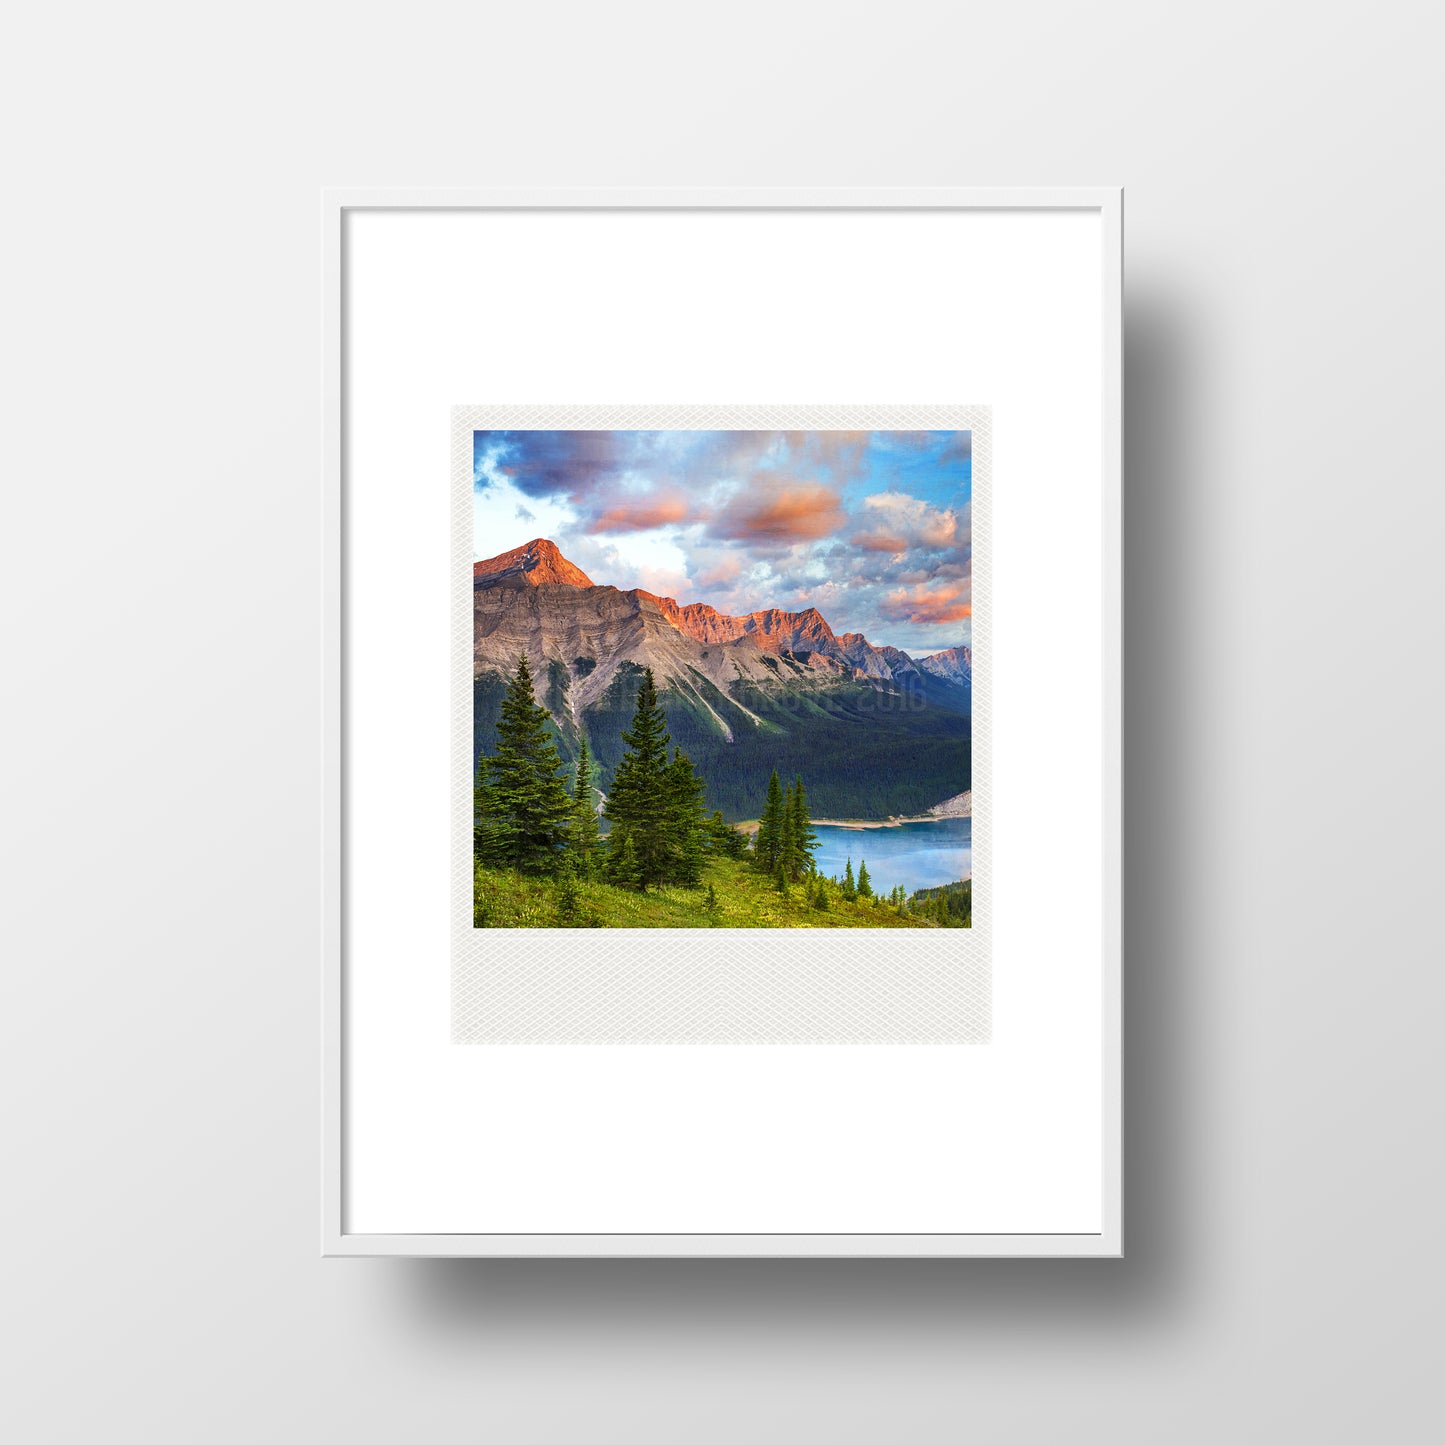 Imán Polaroid Kananaskis Country Alberta Rockies